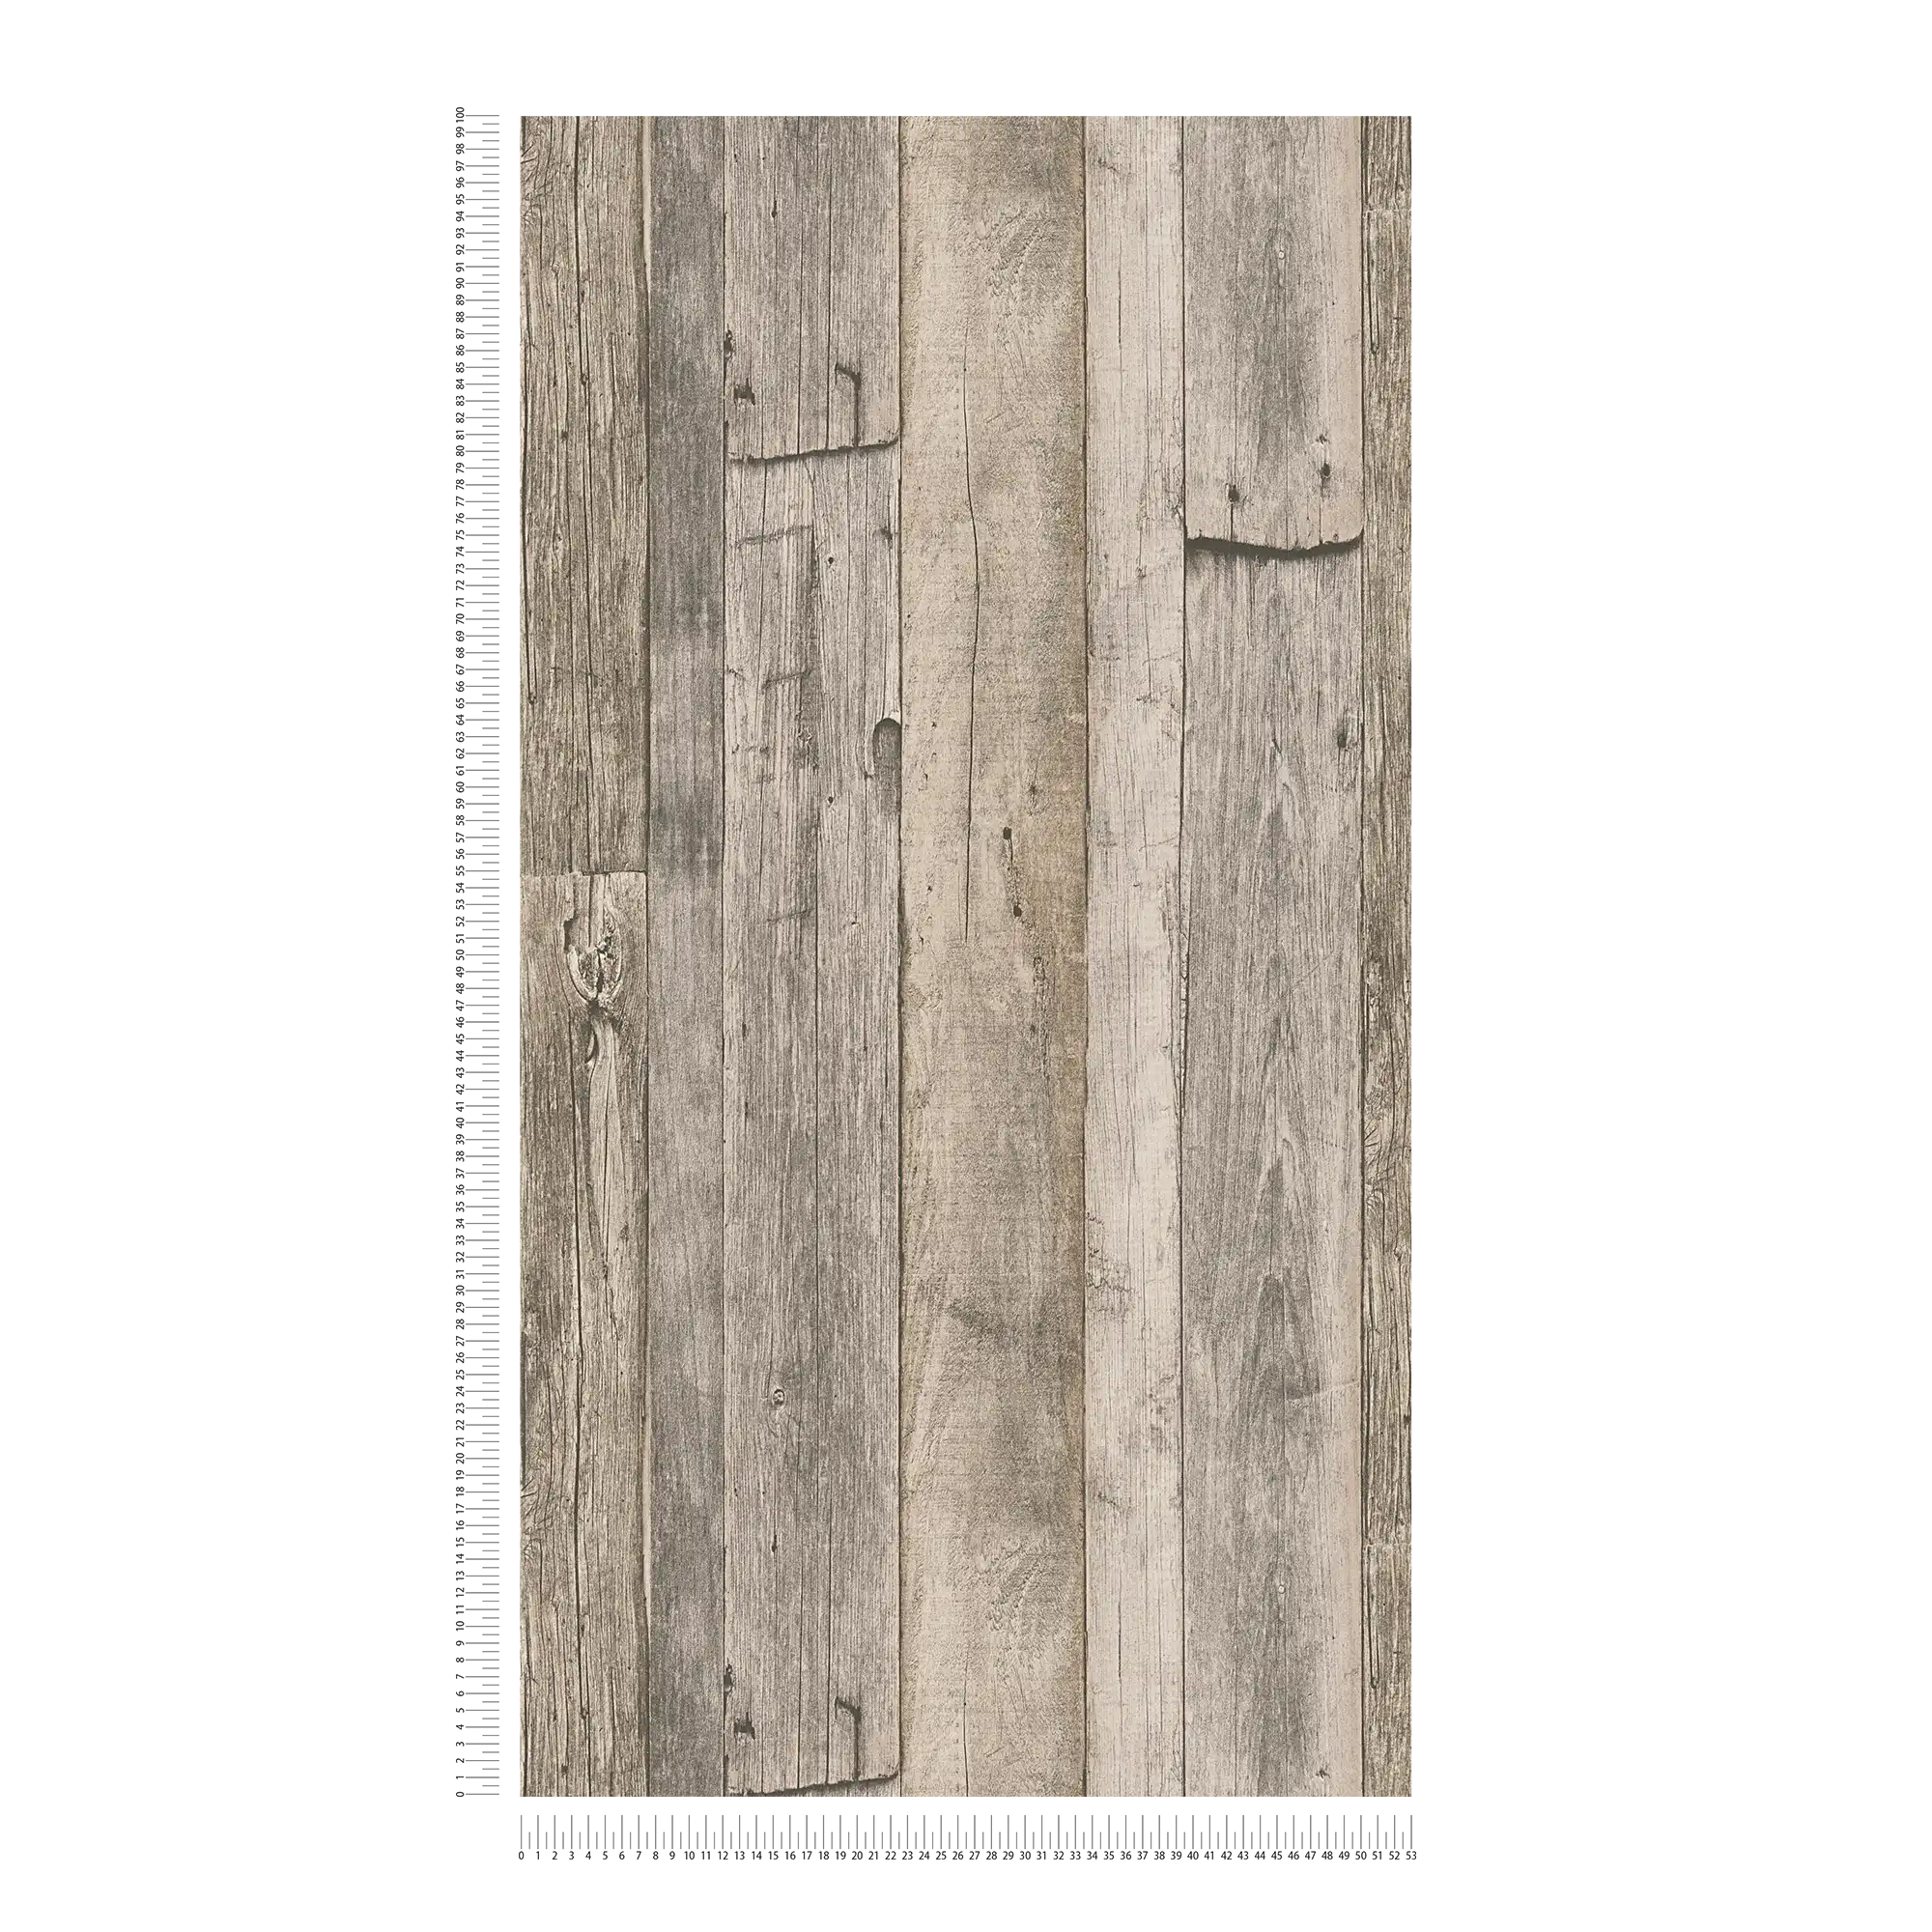             Holztapete mit Brettern im rustikalen Industrial Design – Beige, Schwarz, Creme
        